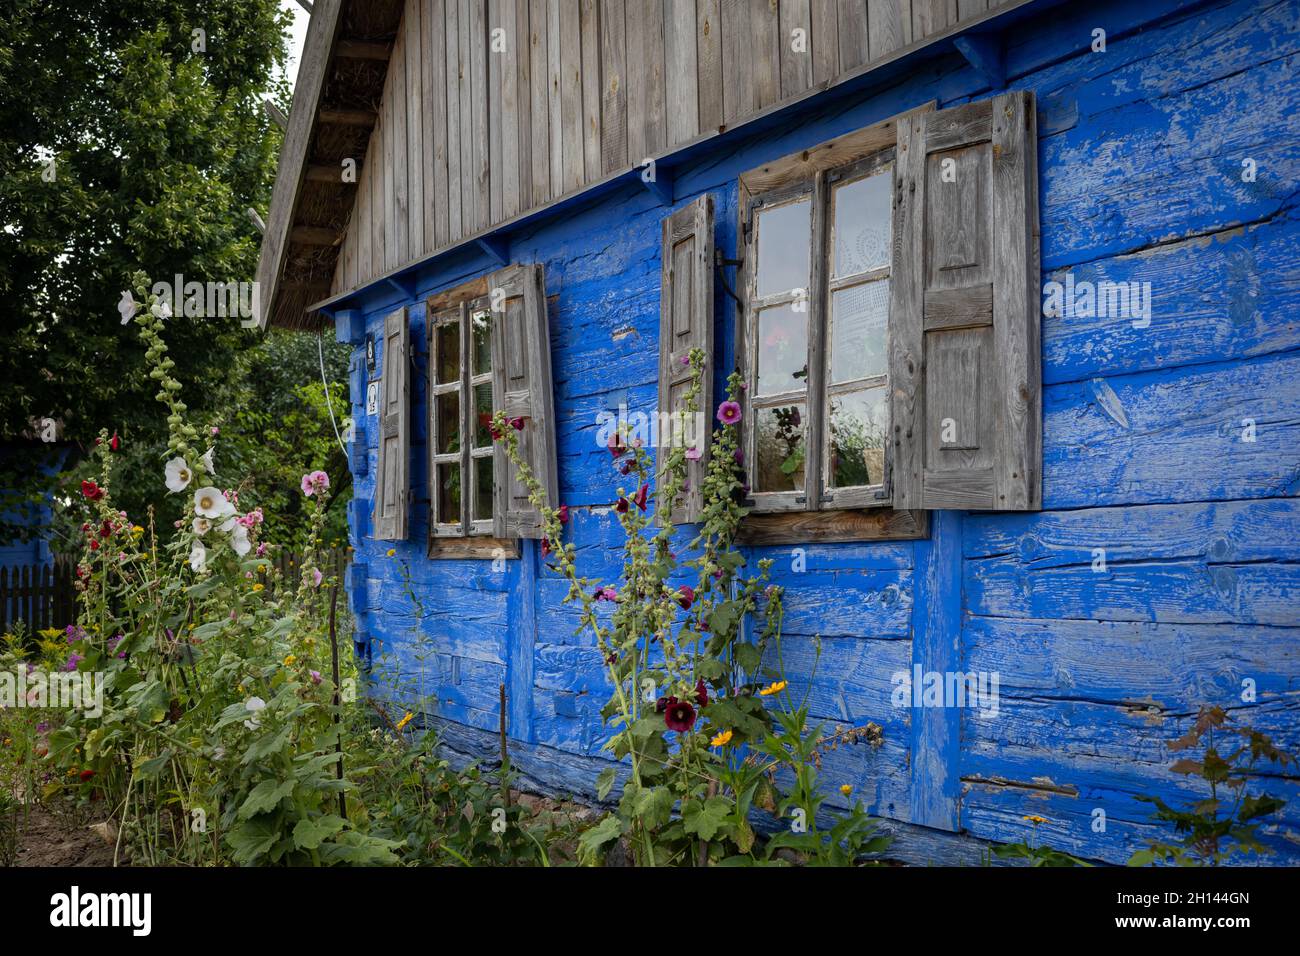 Sierpc, Polen - 23. Juli 2021: Nahaufnahme eines schönen, traditionellen blauen Holzhauses. Fenster mit Fensterläden. Hollyhocks im Garten. Stockfoto